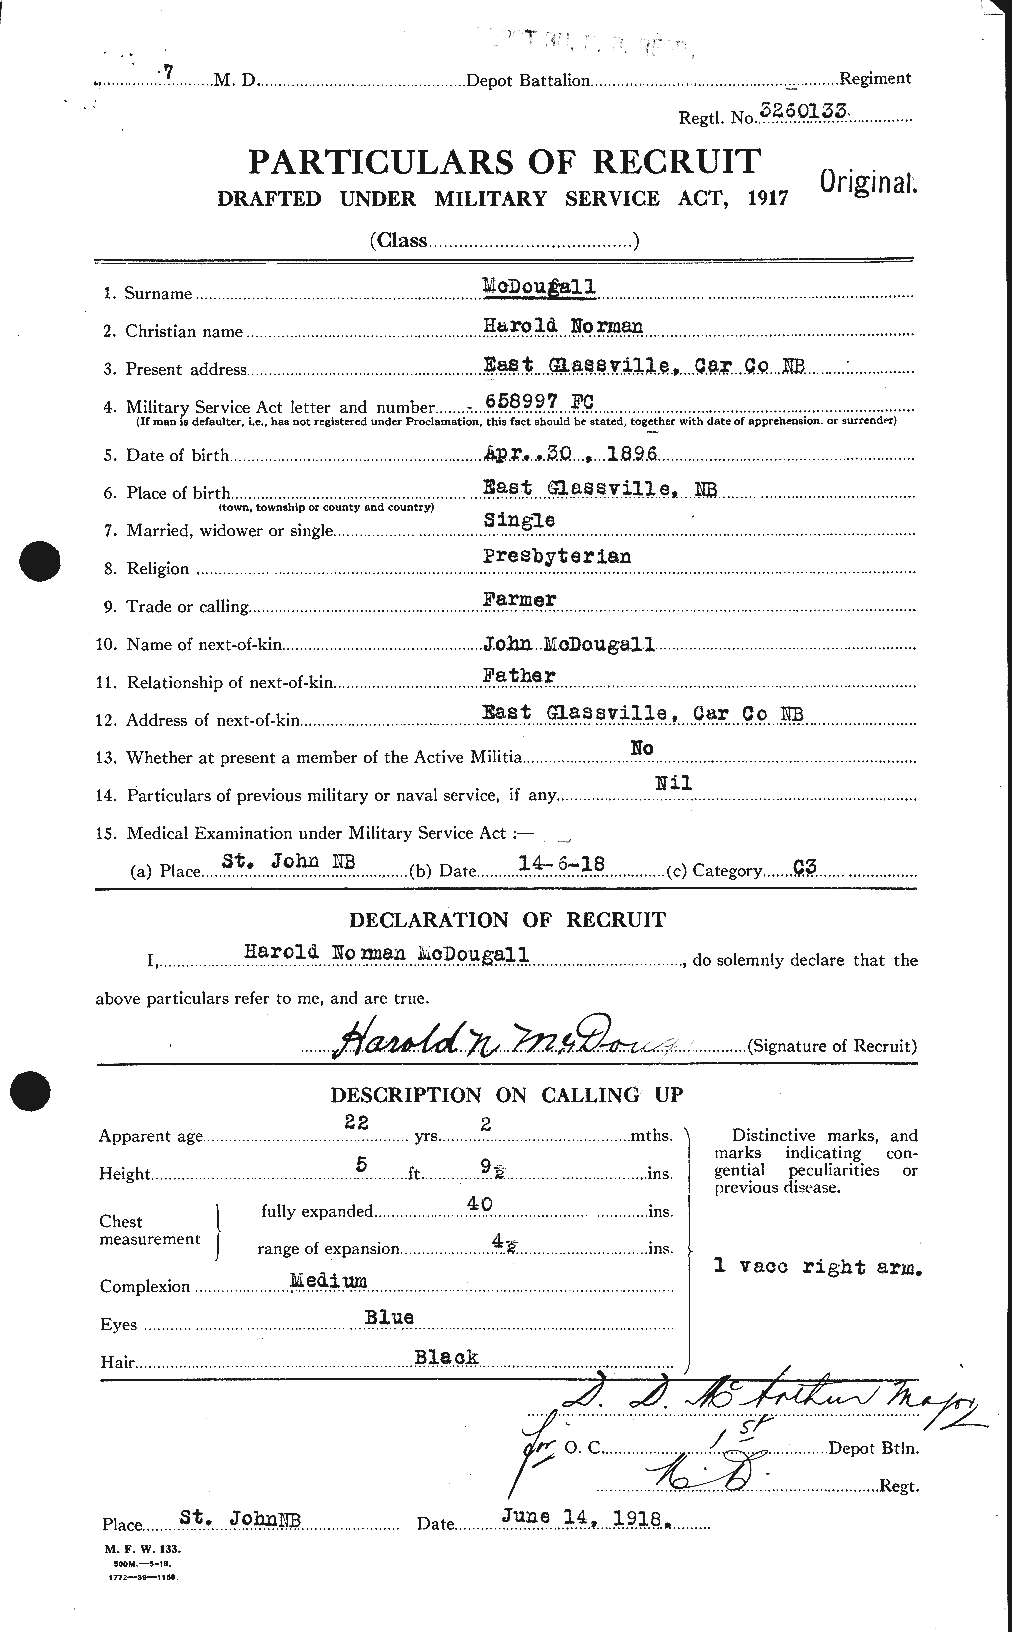 Dossiers du Personnel de la Première Guerre mondiale - CEC 518129a